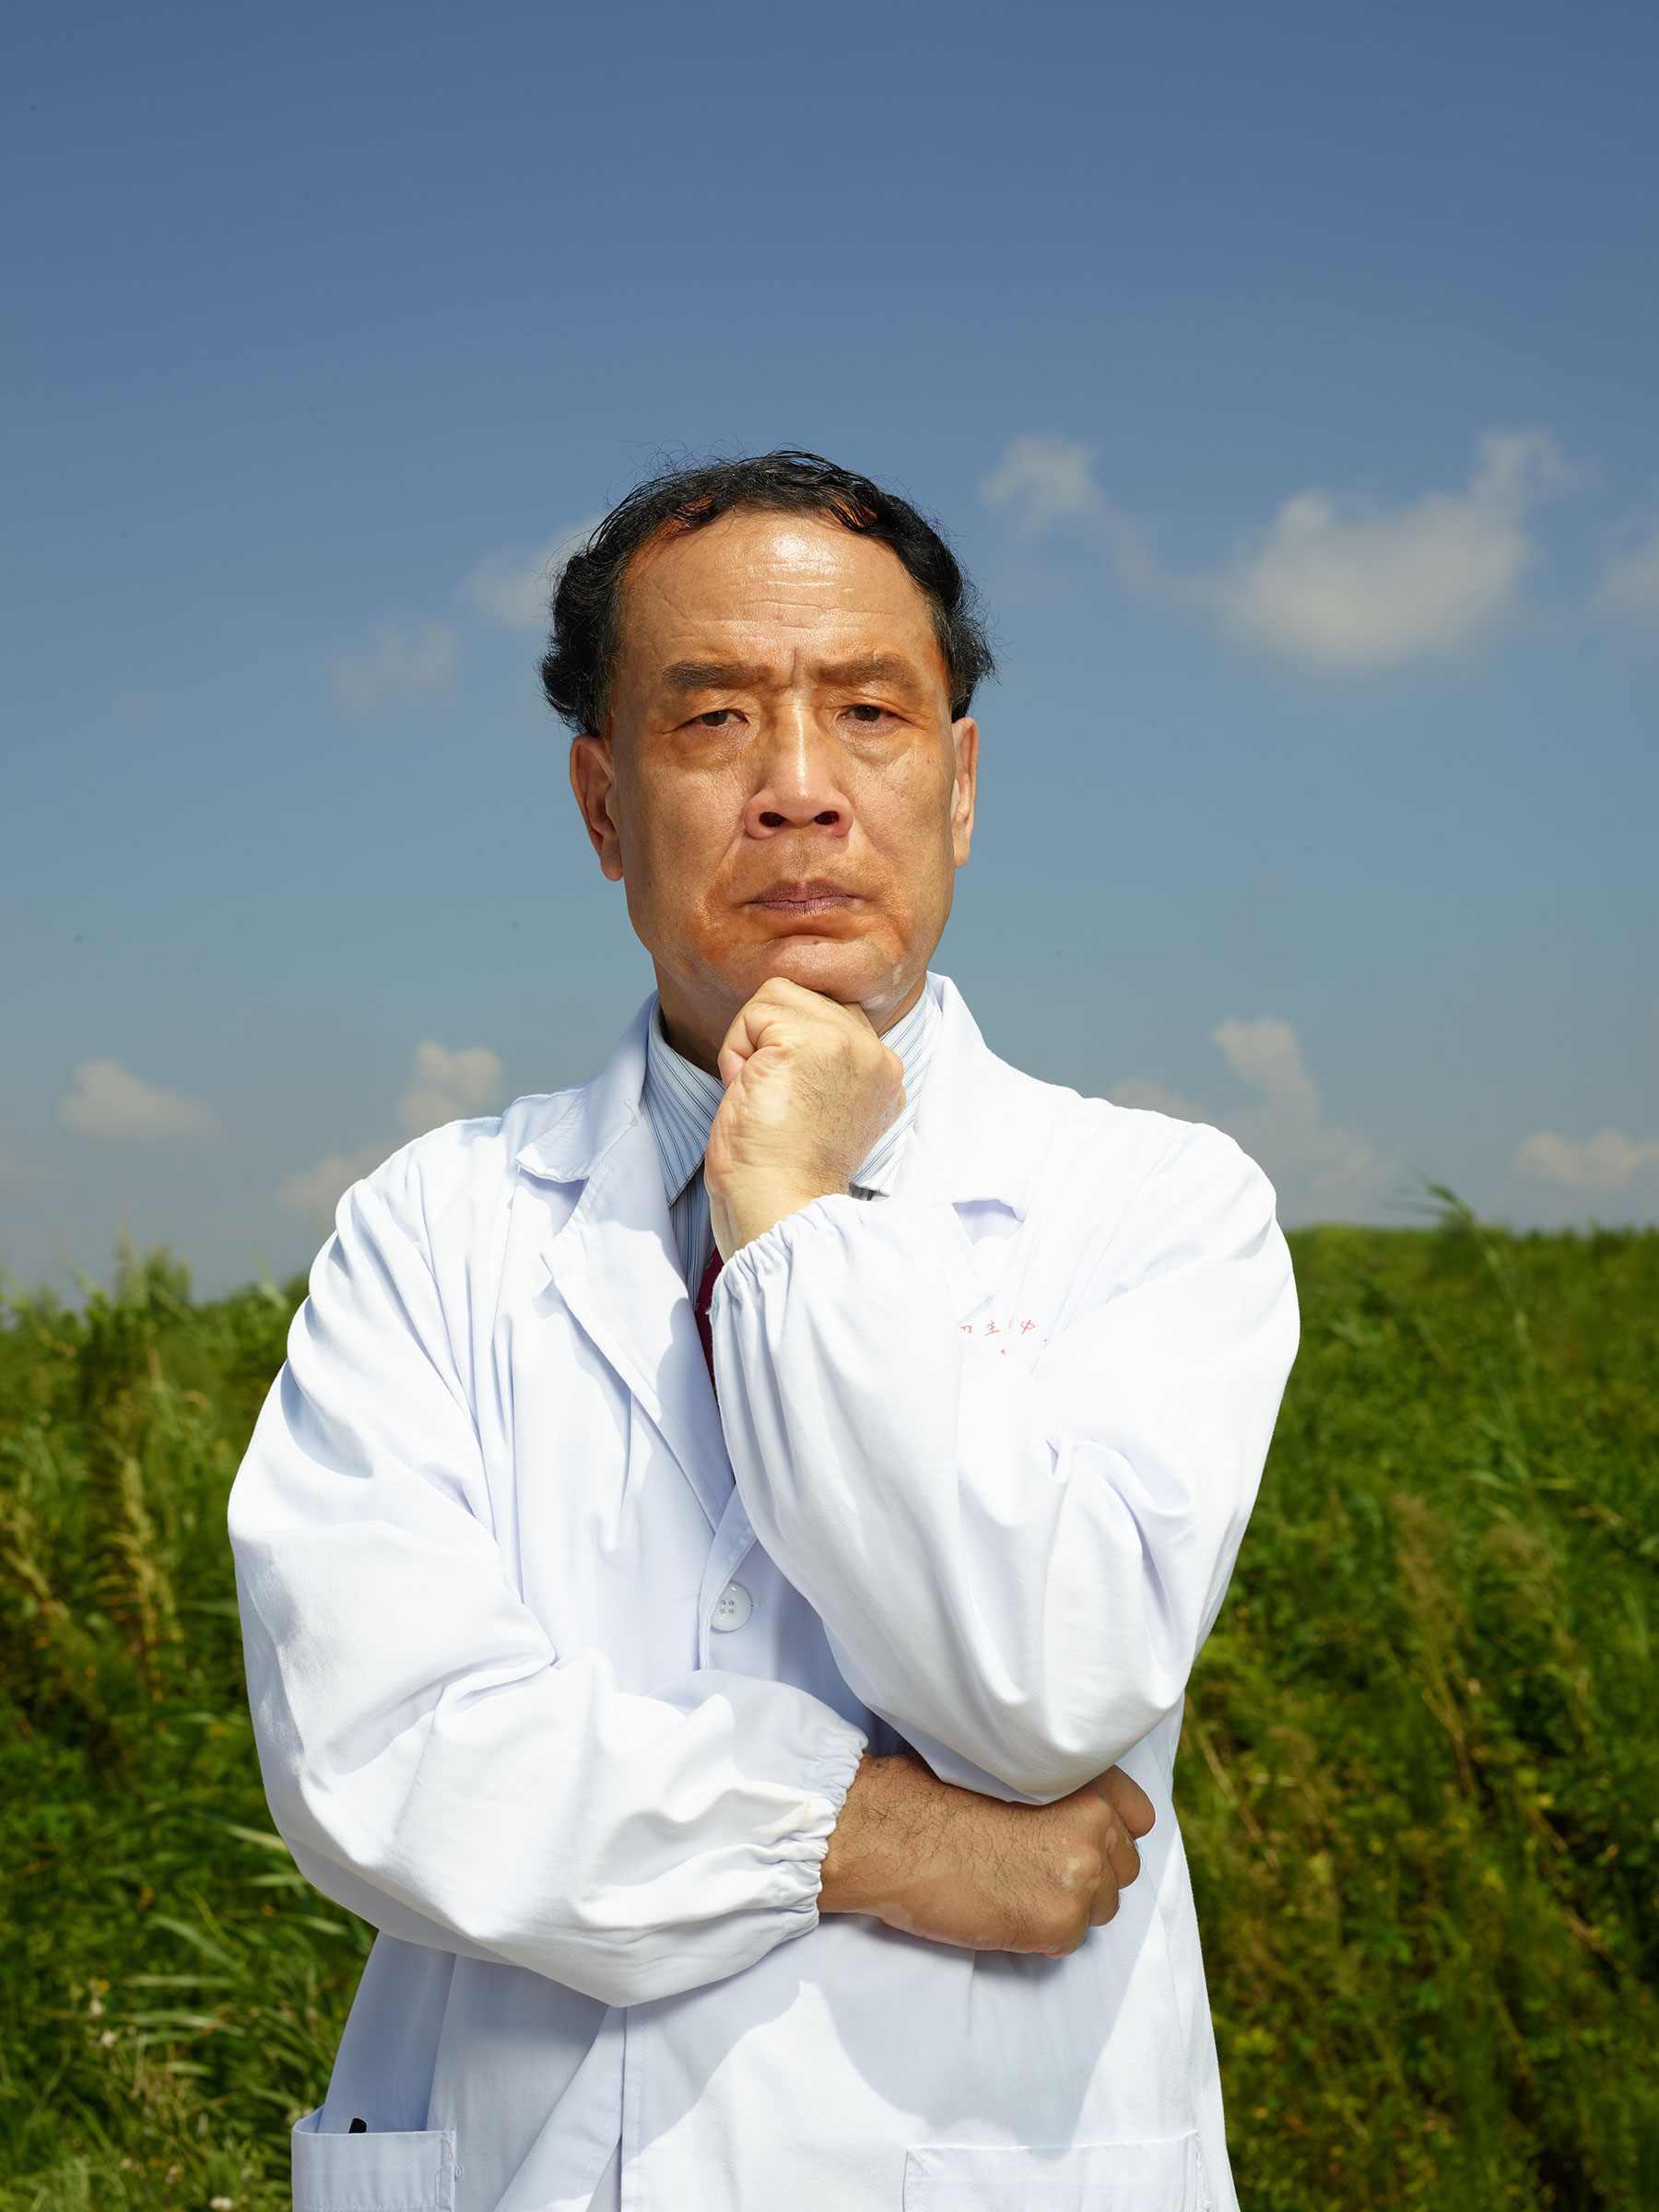 TIME 100 Pioneers: Zhang Yongzhen